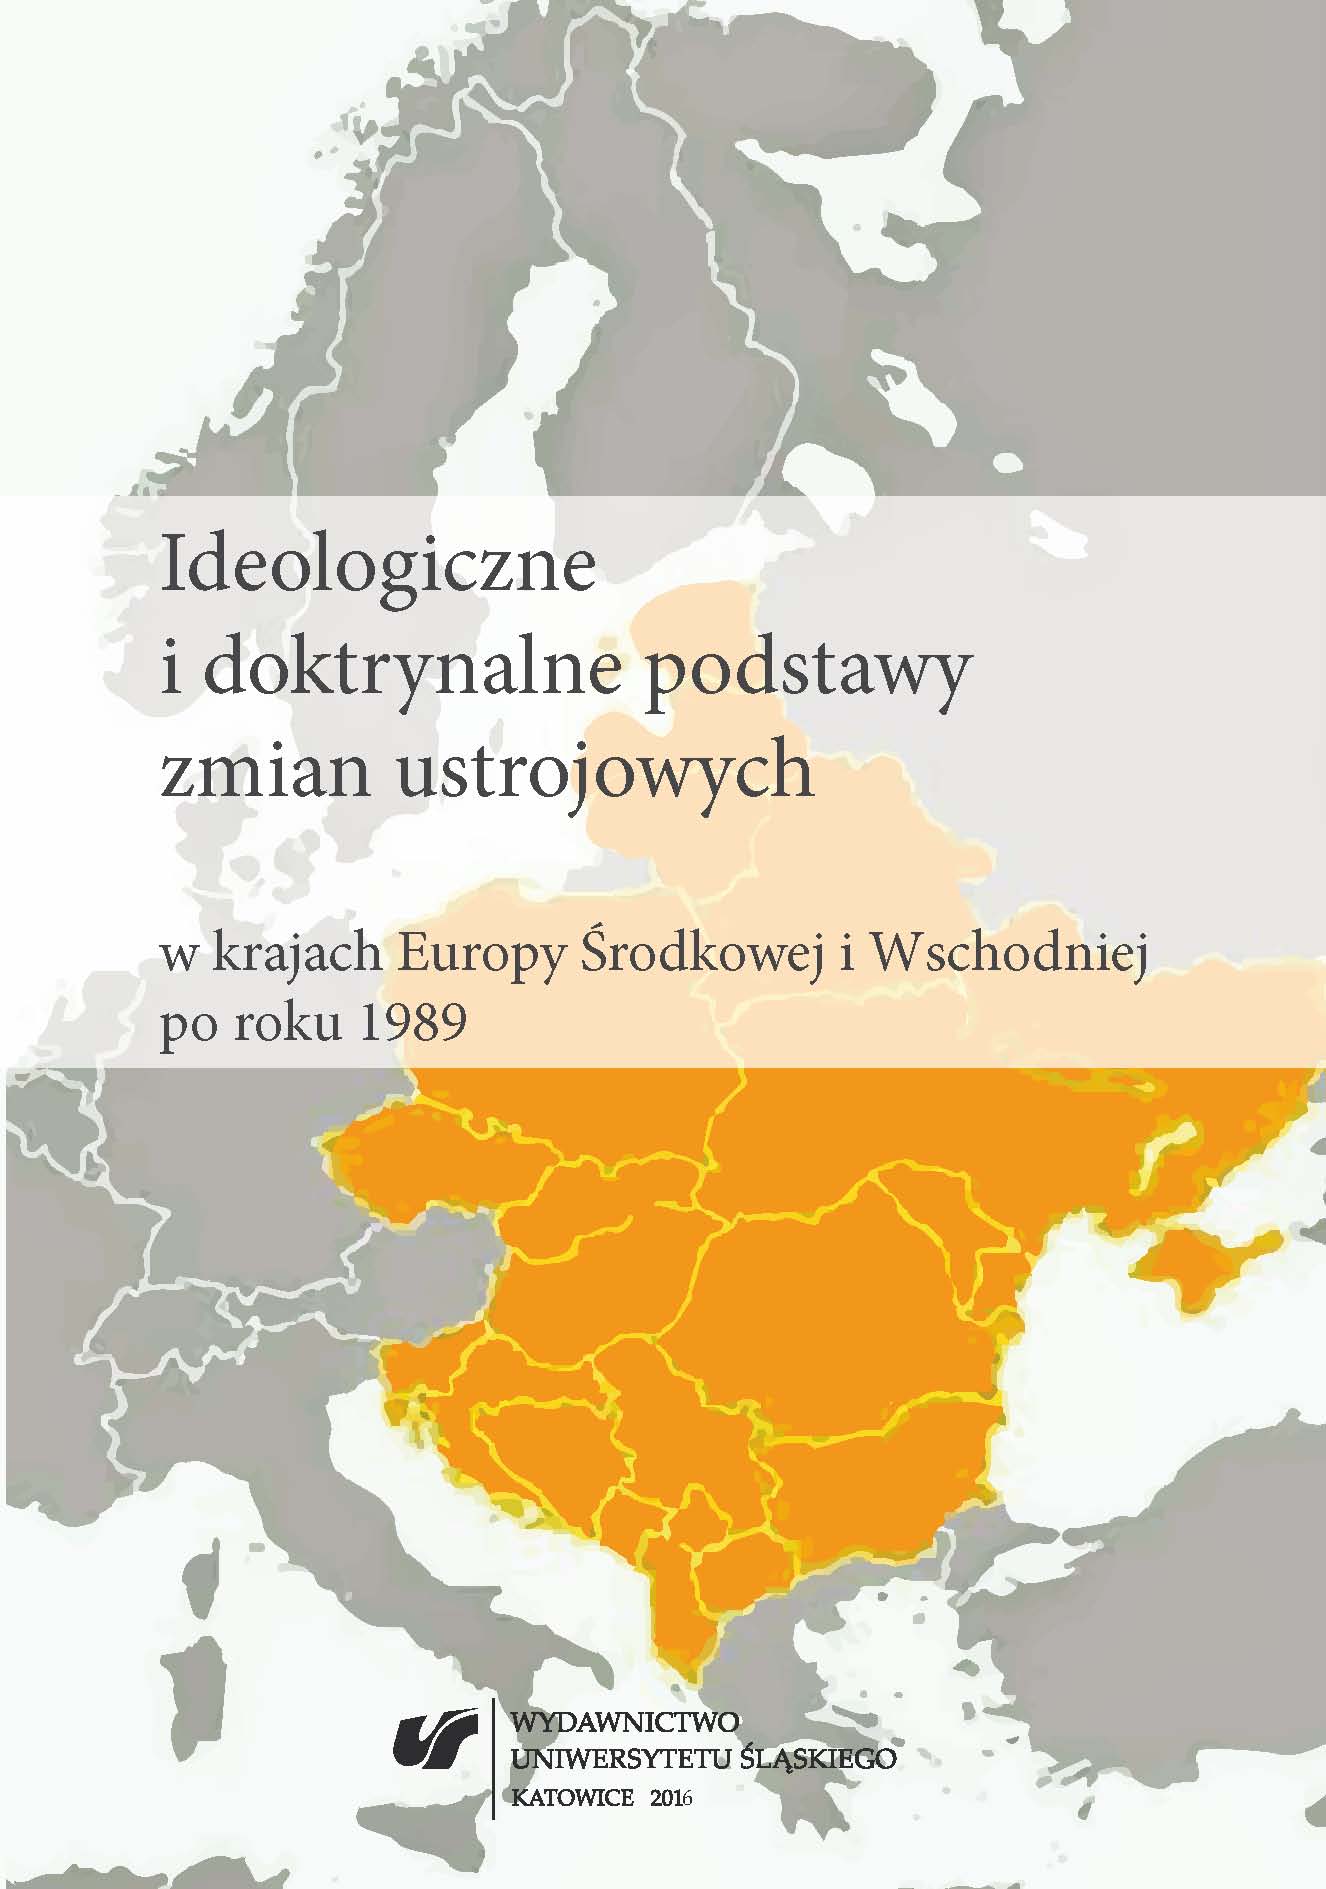 Trzecia Pozycja jako ewolucja ideowa partii radykalnej prawicy w Europie Środkowej i Wschodniej po roku 1989